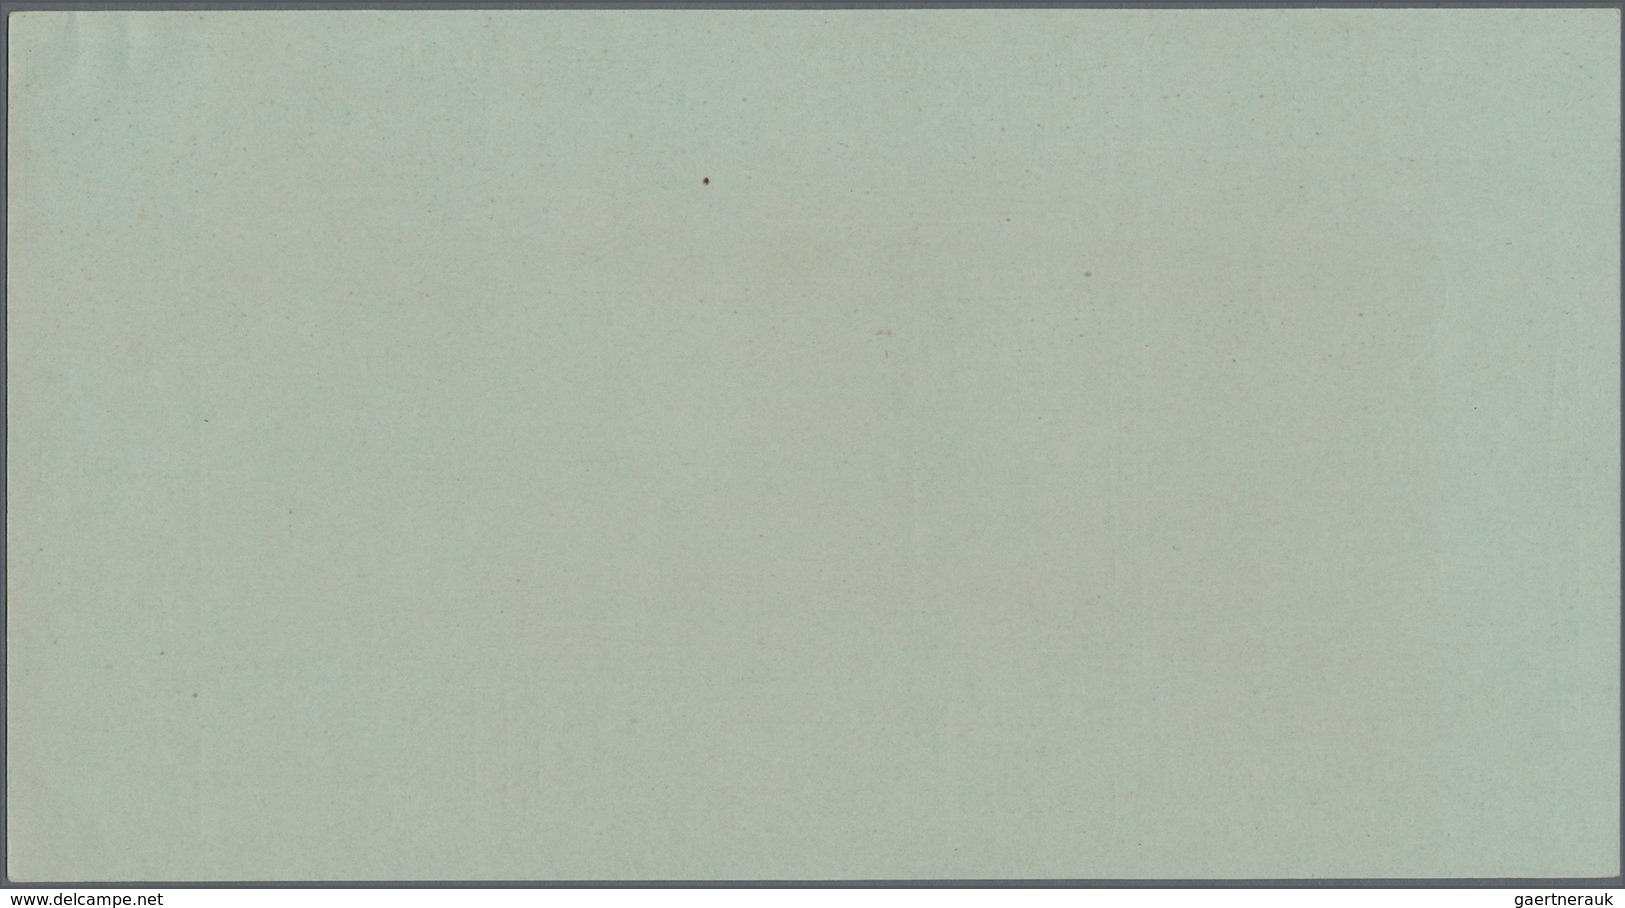 San Marino - Ganzsachen: 1890: six packet card, 0,25 - 2,70 L, mint.